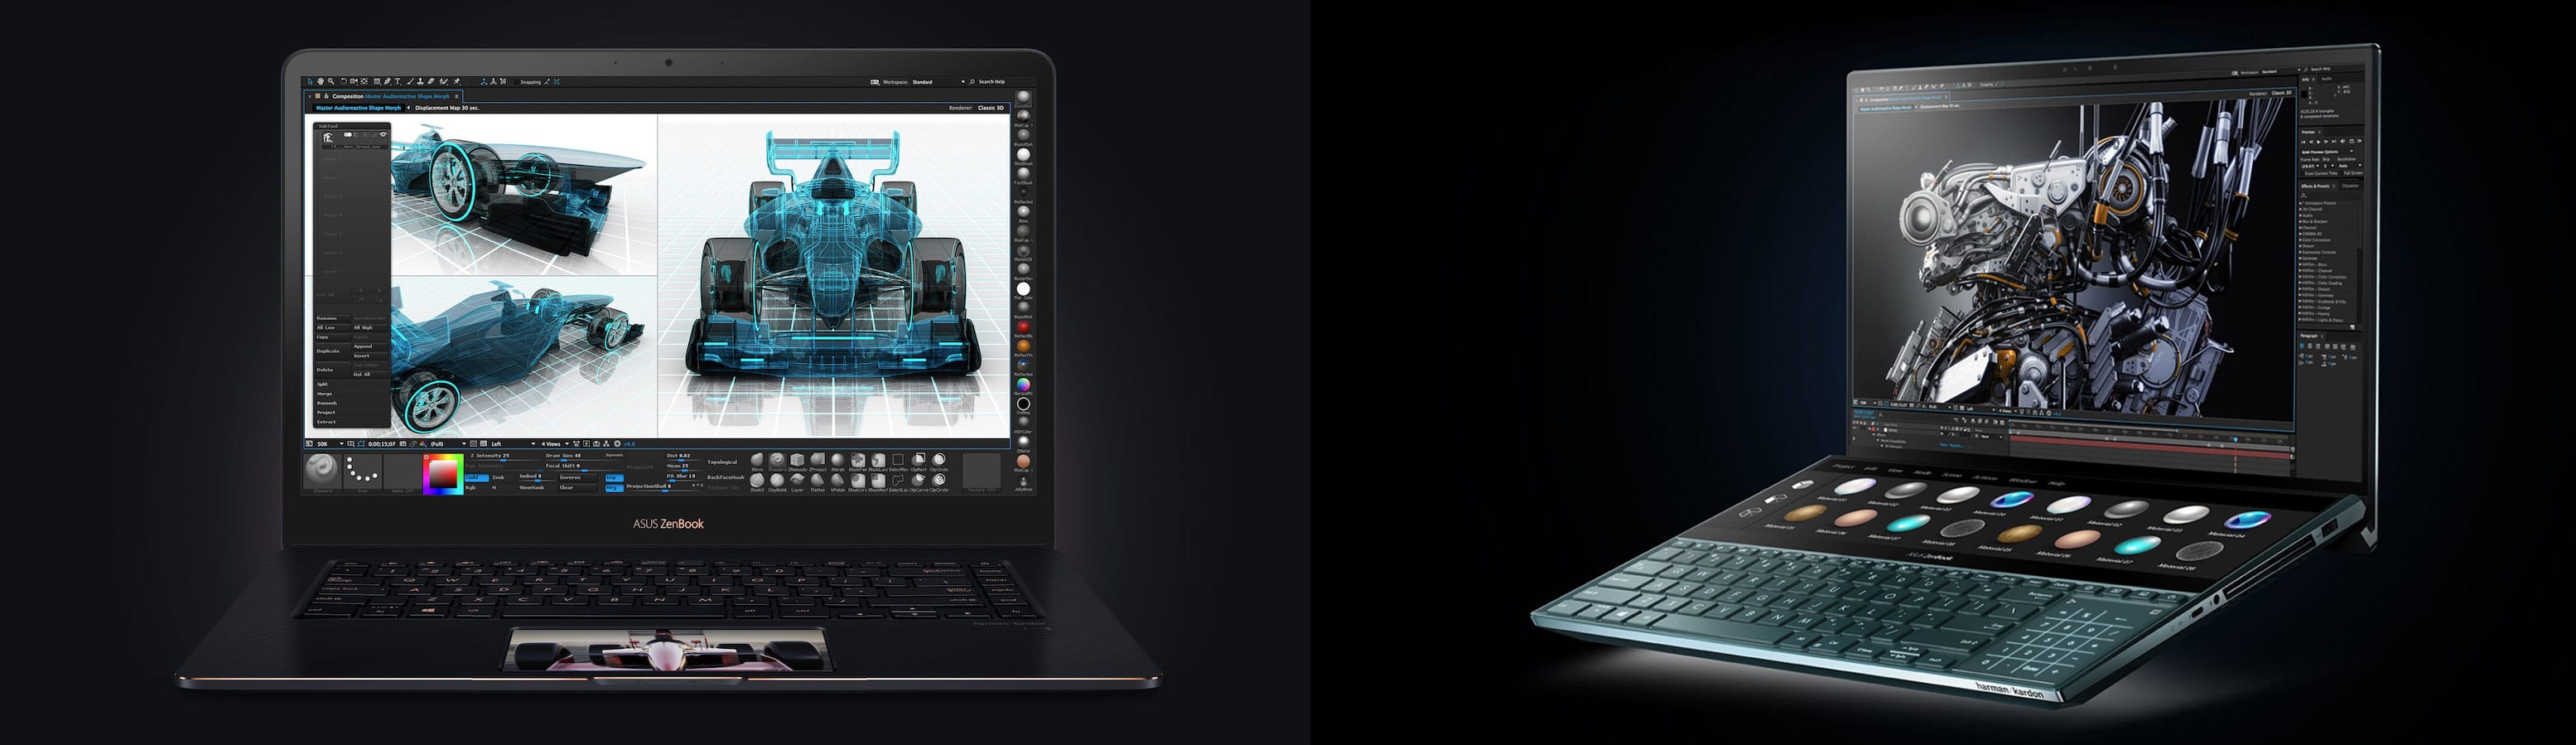 2018 ZenBook Pro (left) vs 2019 ZenBook pro Duo (right)